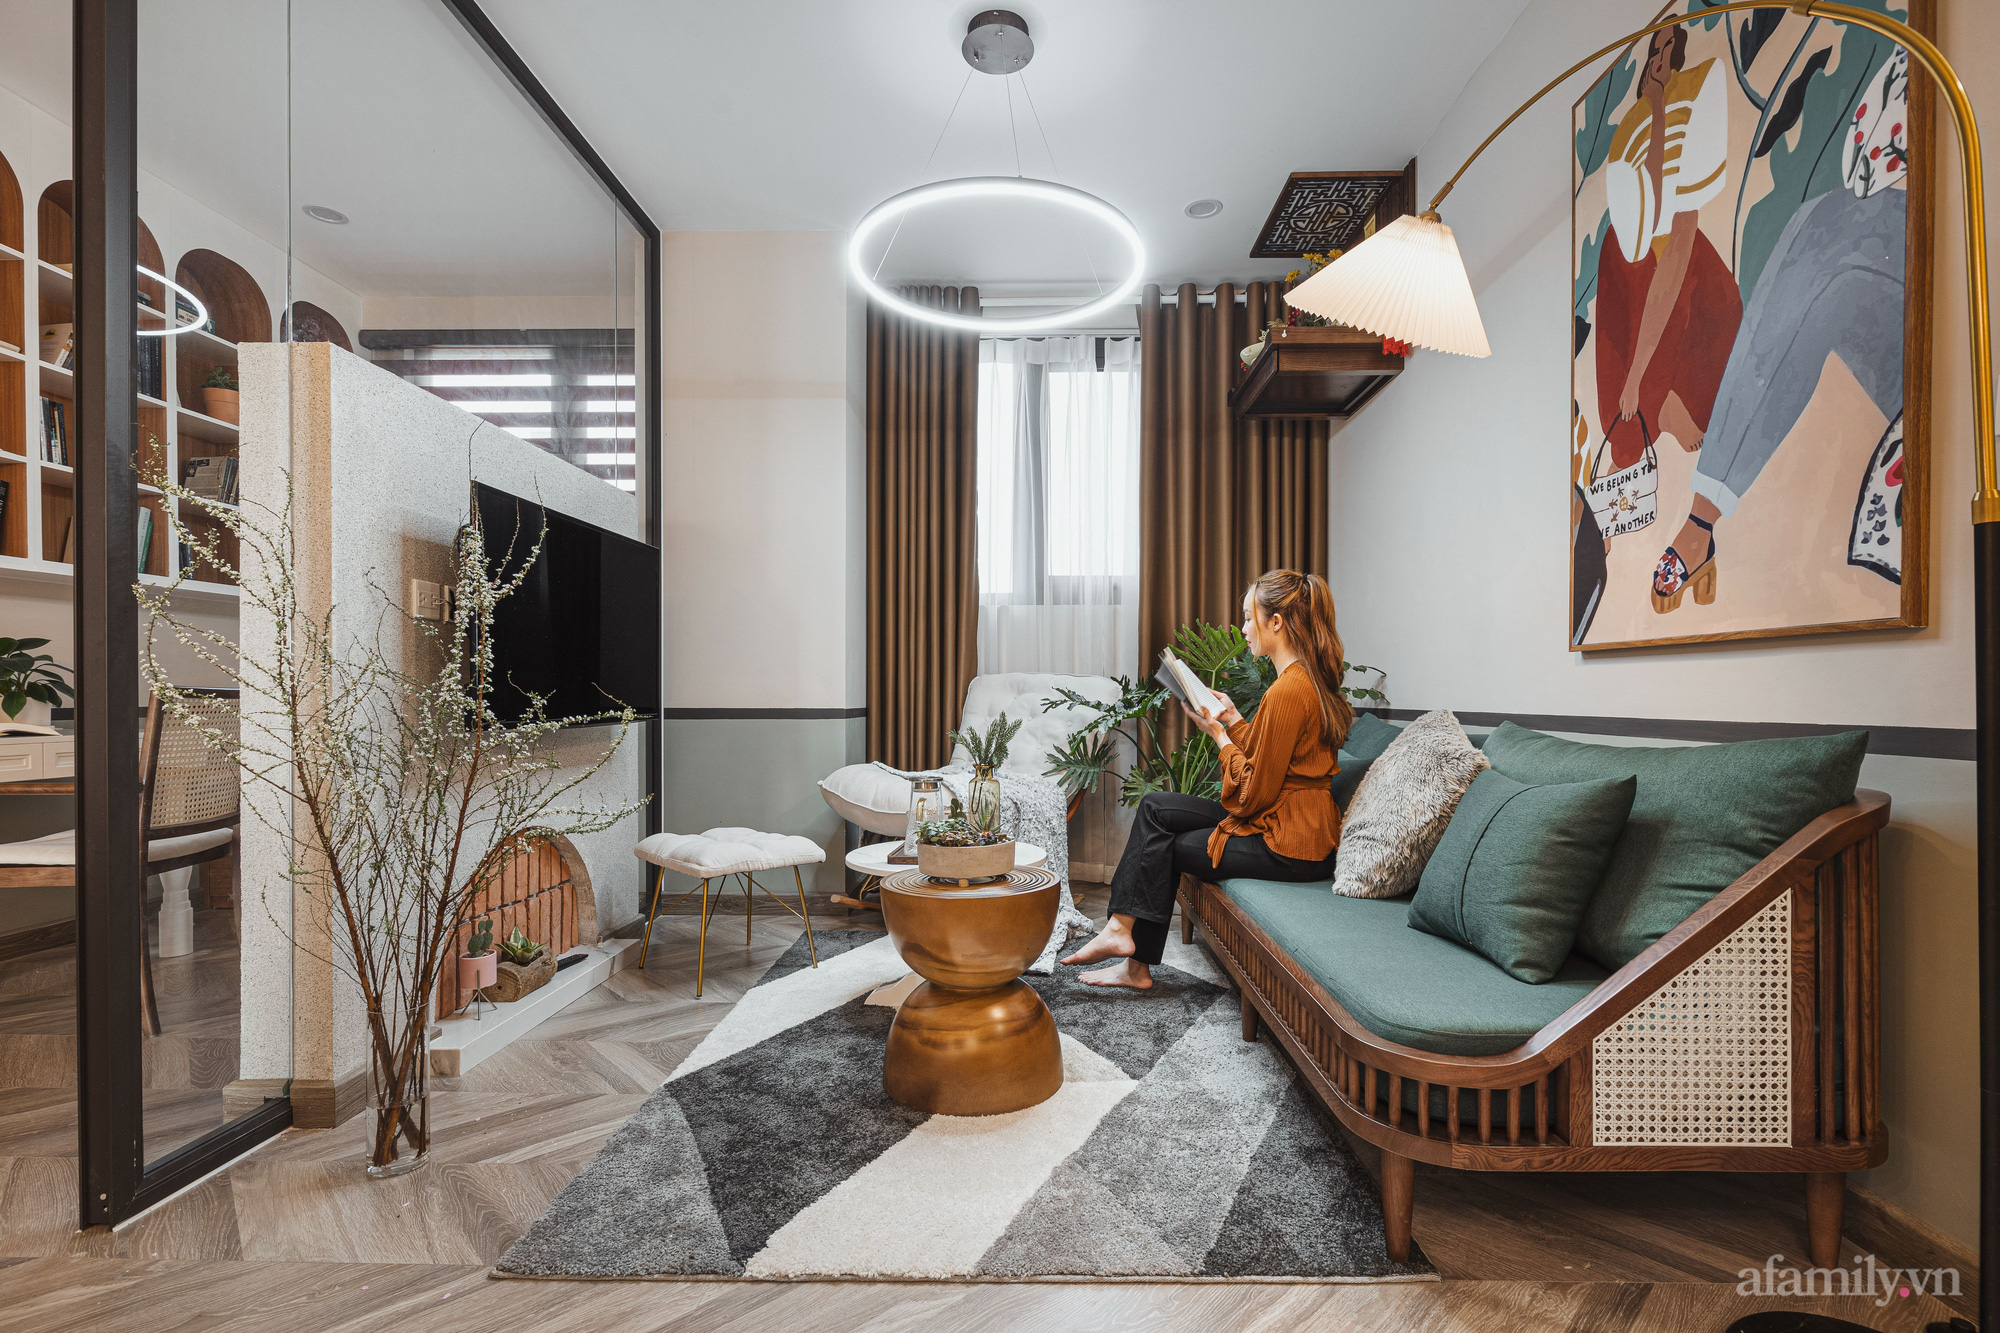 Chiêm ngưỡng căn hộ 83m² kết hợp 3 phong cách Farrmhouse, Ecletic và Scandinavian của cặp vợ chồng trẻ ở Hà Đông - Ảnh 3.